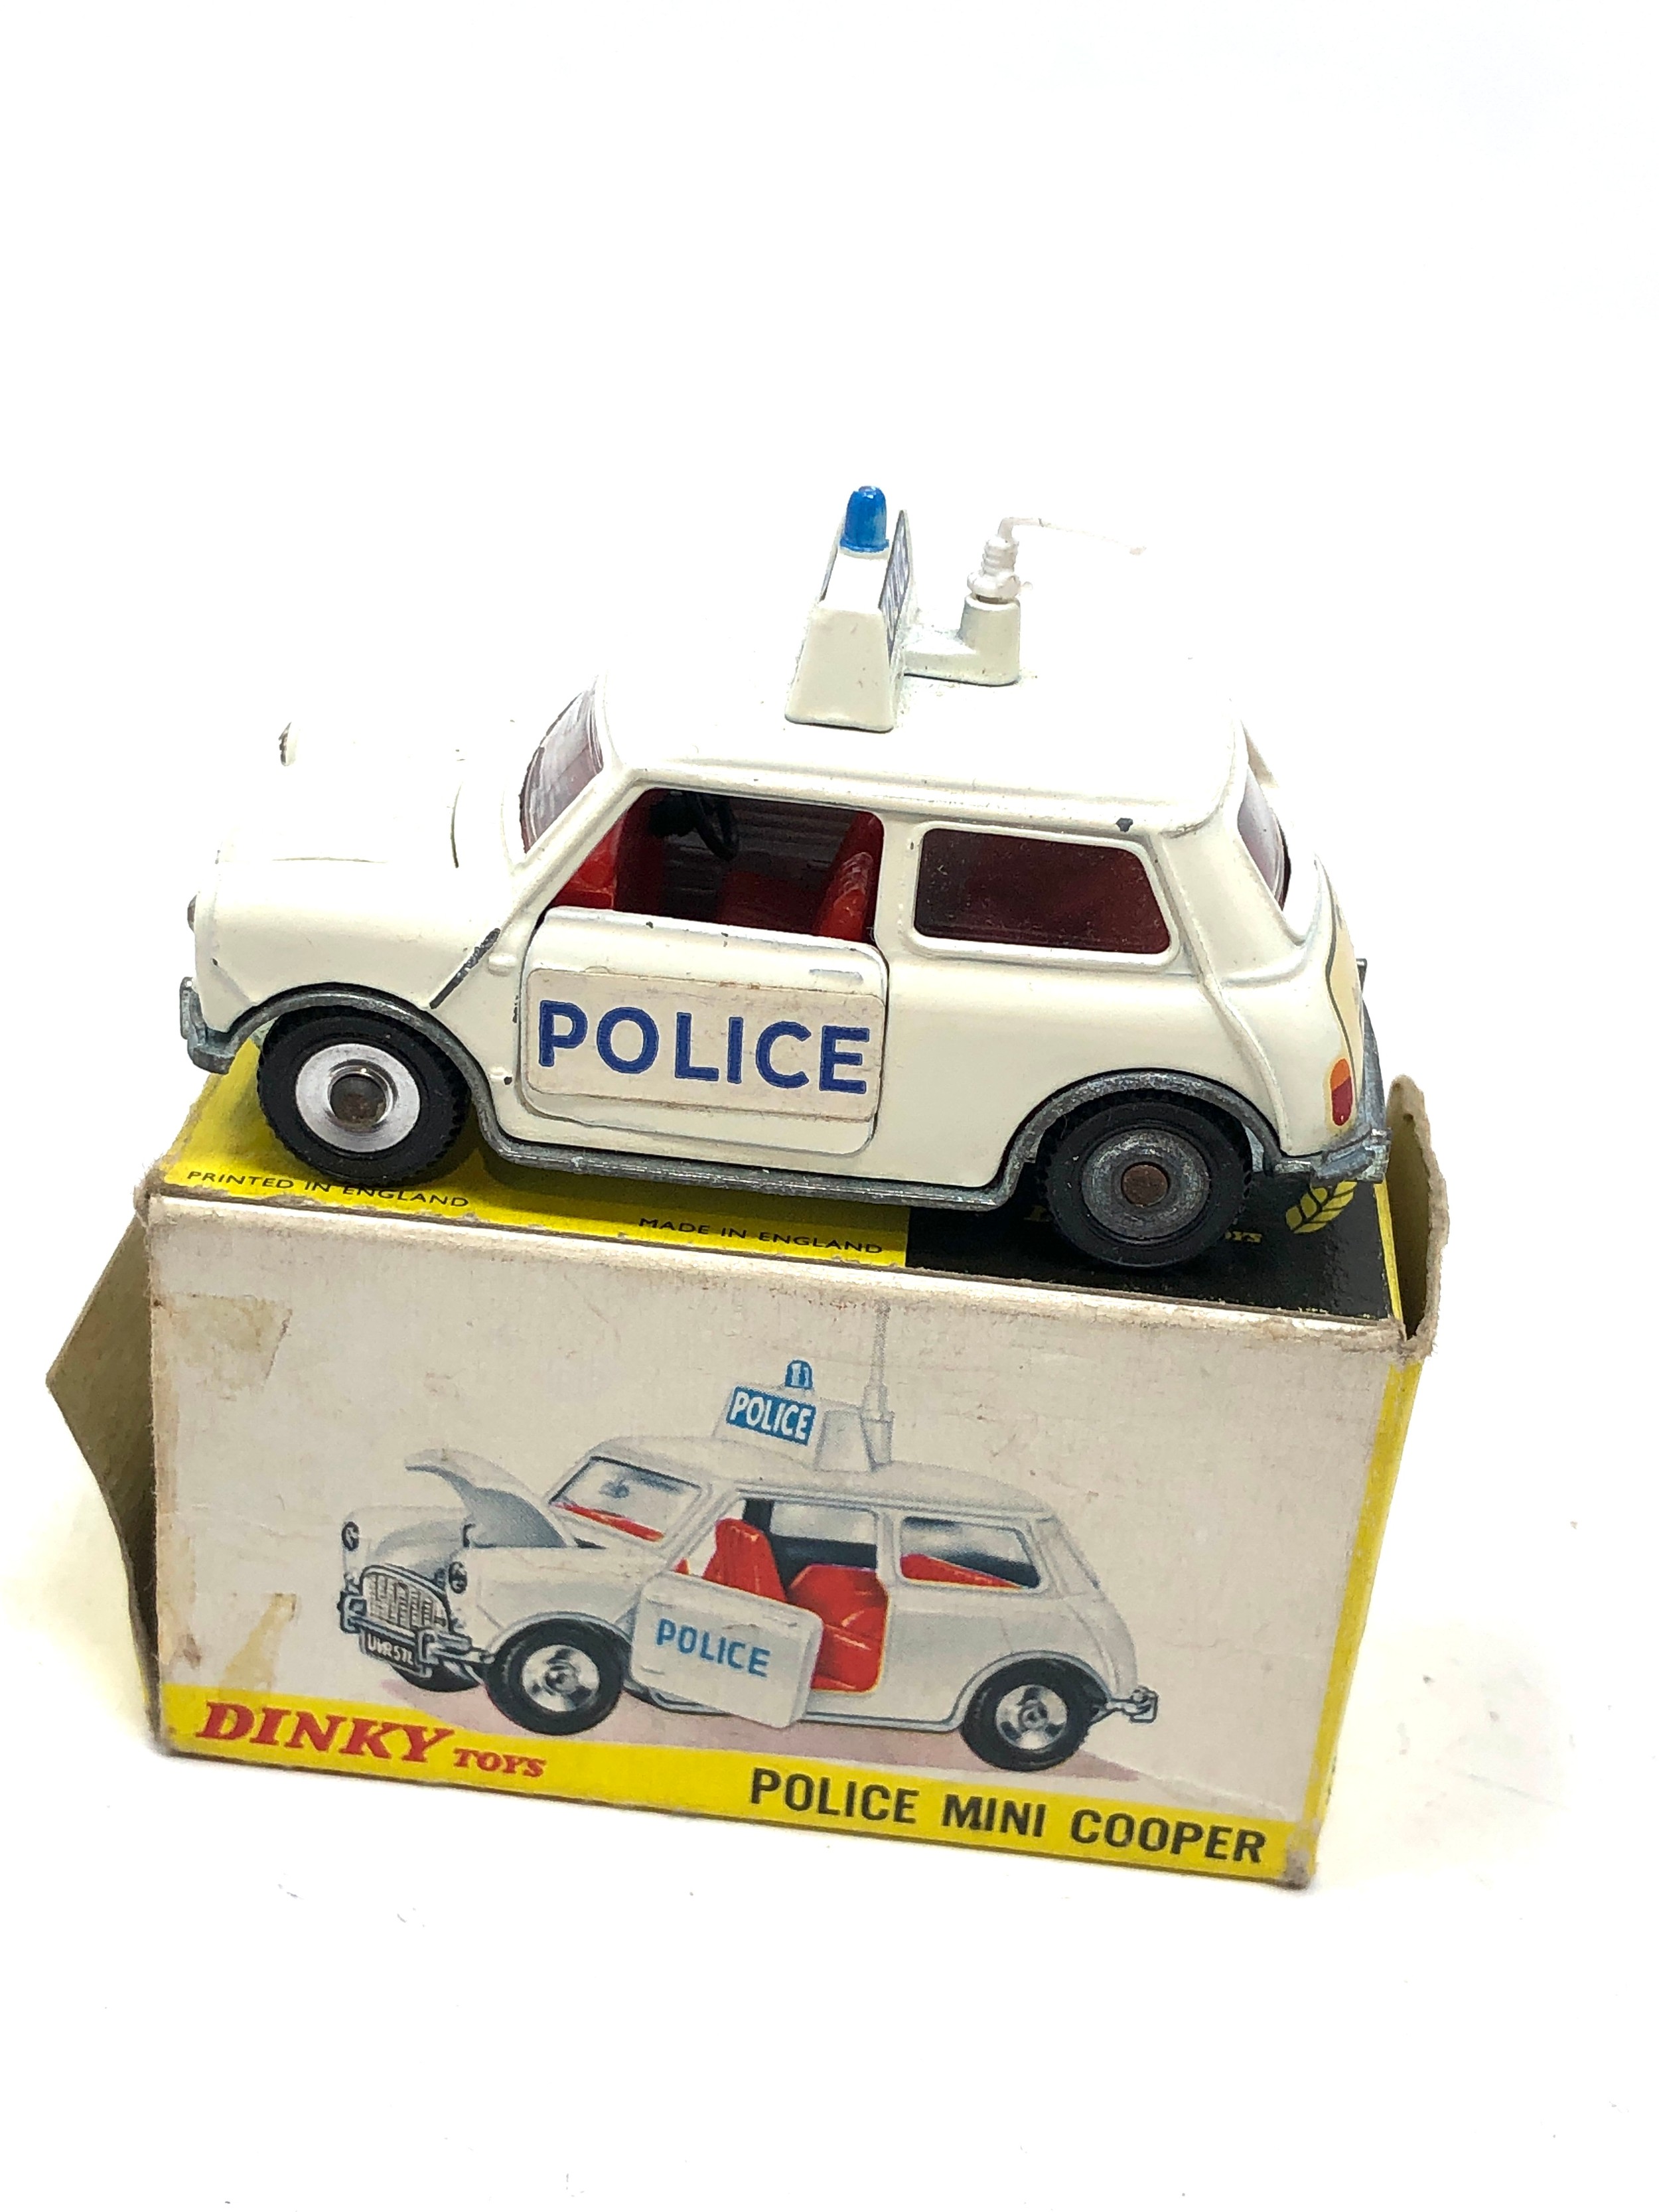 Dinky toys 250 police mini cooper